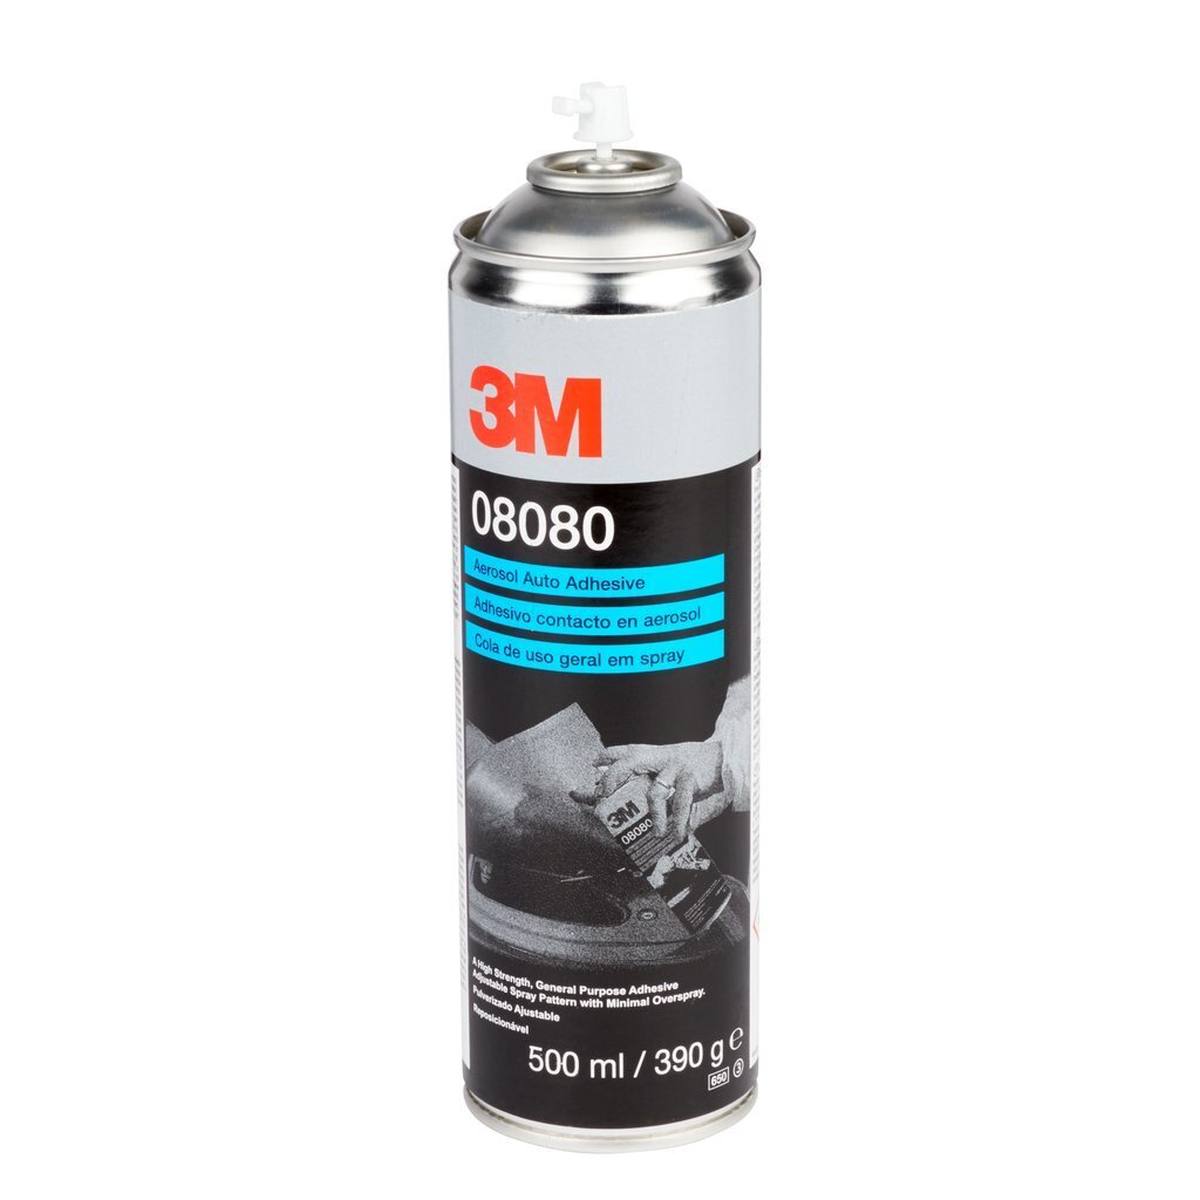 3M Spray de colle pour carrosserie, 500 ml #08080